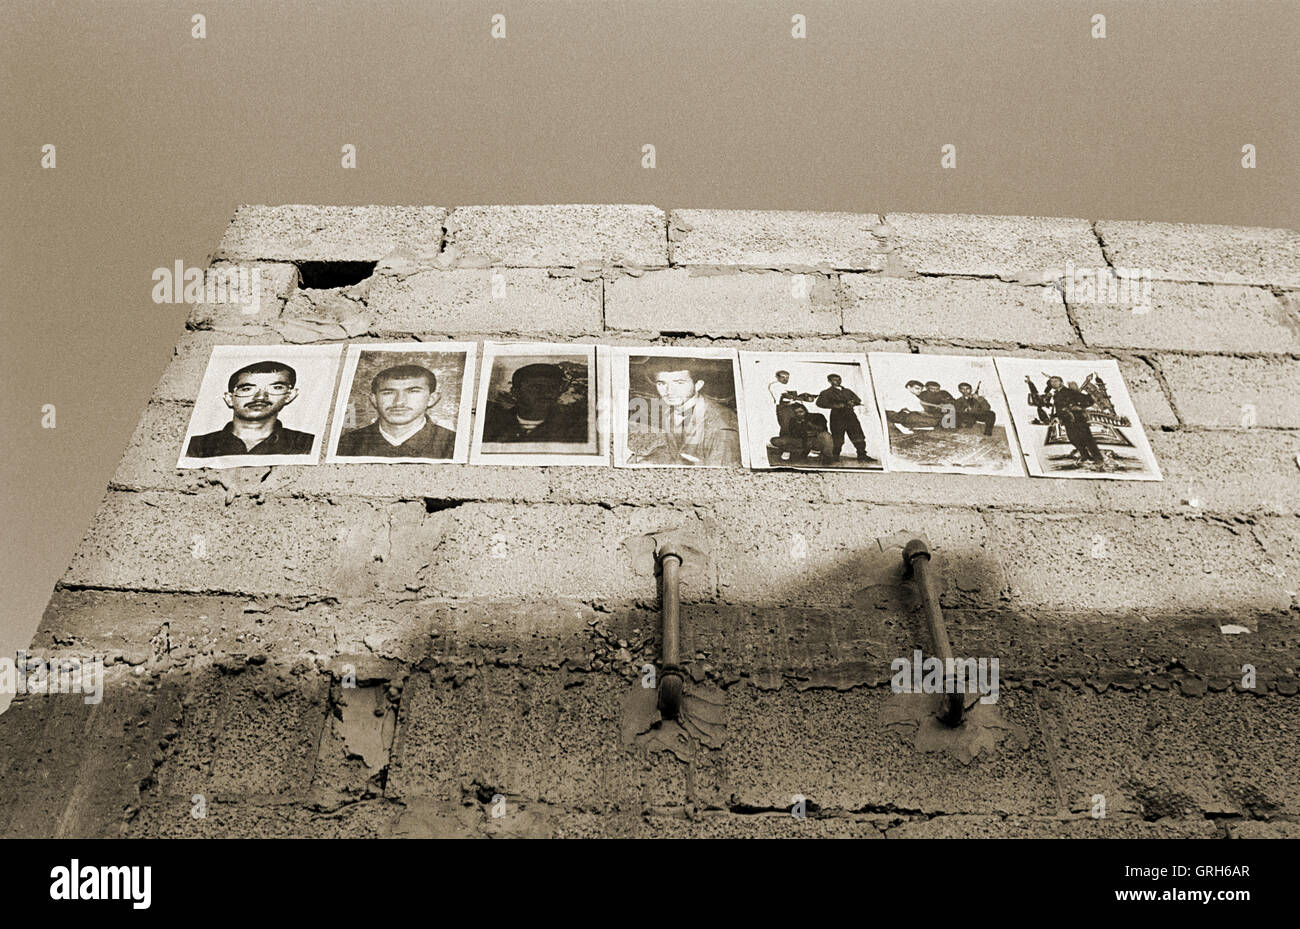 Szene aus einem Documnetray-Foto-Projekt in den Gaza-Streifen zeigt die lokalen palästinensischen Menschen und Orte. Zeigt Fotos von palästinensischen Märtyrer ot einer alten Mauer eingefügt. Stockfoto